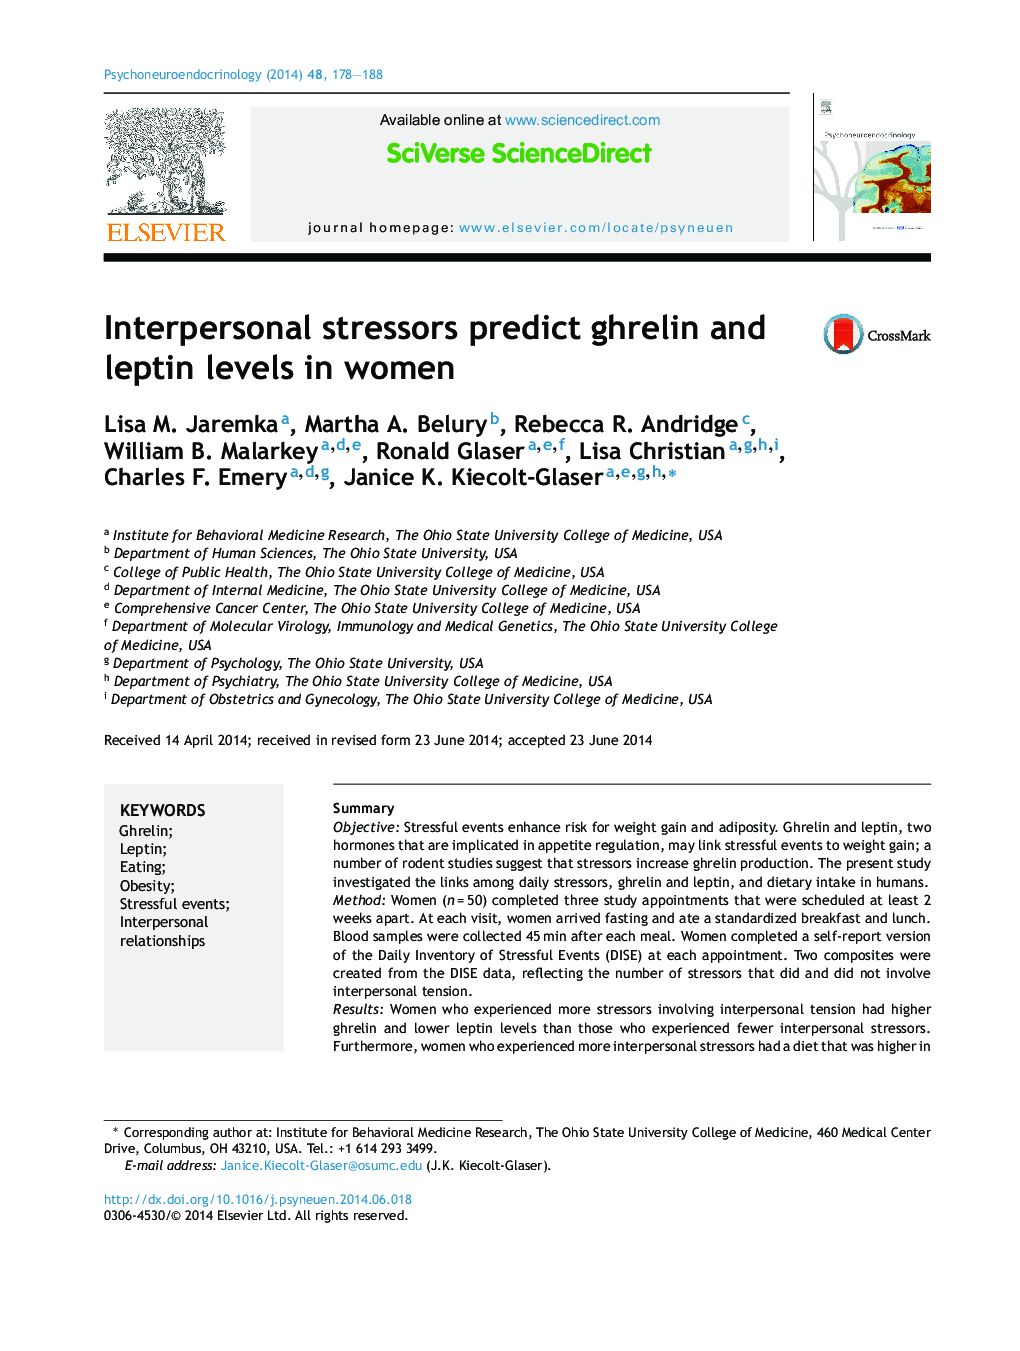 استرسورهای بین فردی پیش بینی سطوح گرلین و لپتین در زنان است 